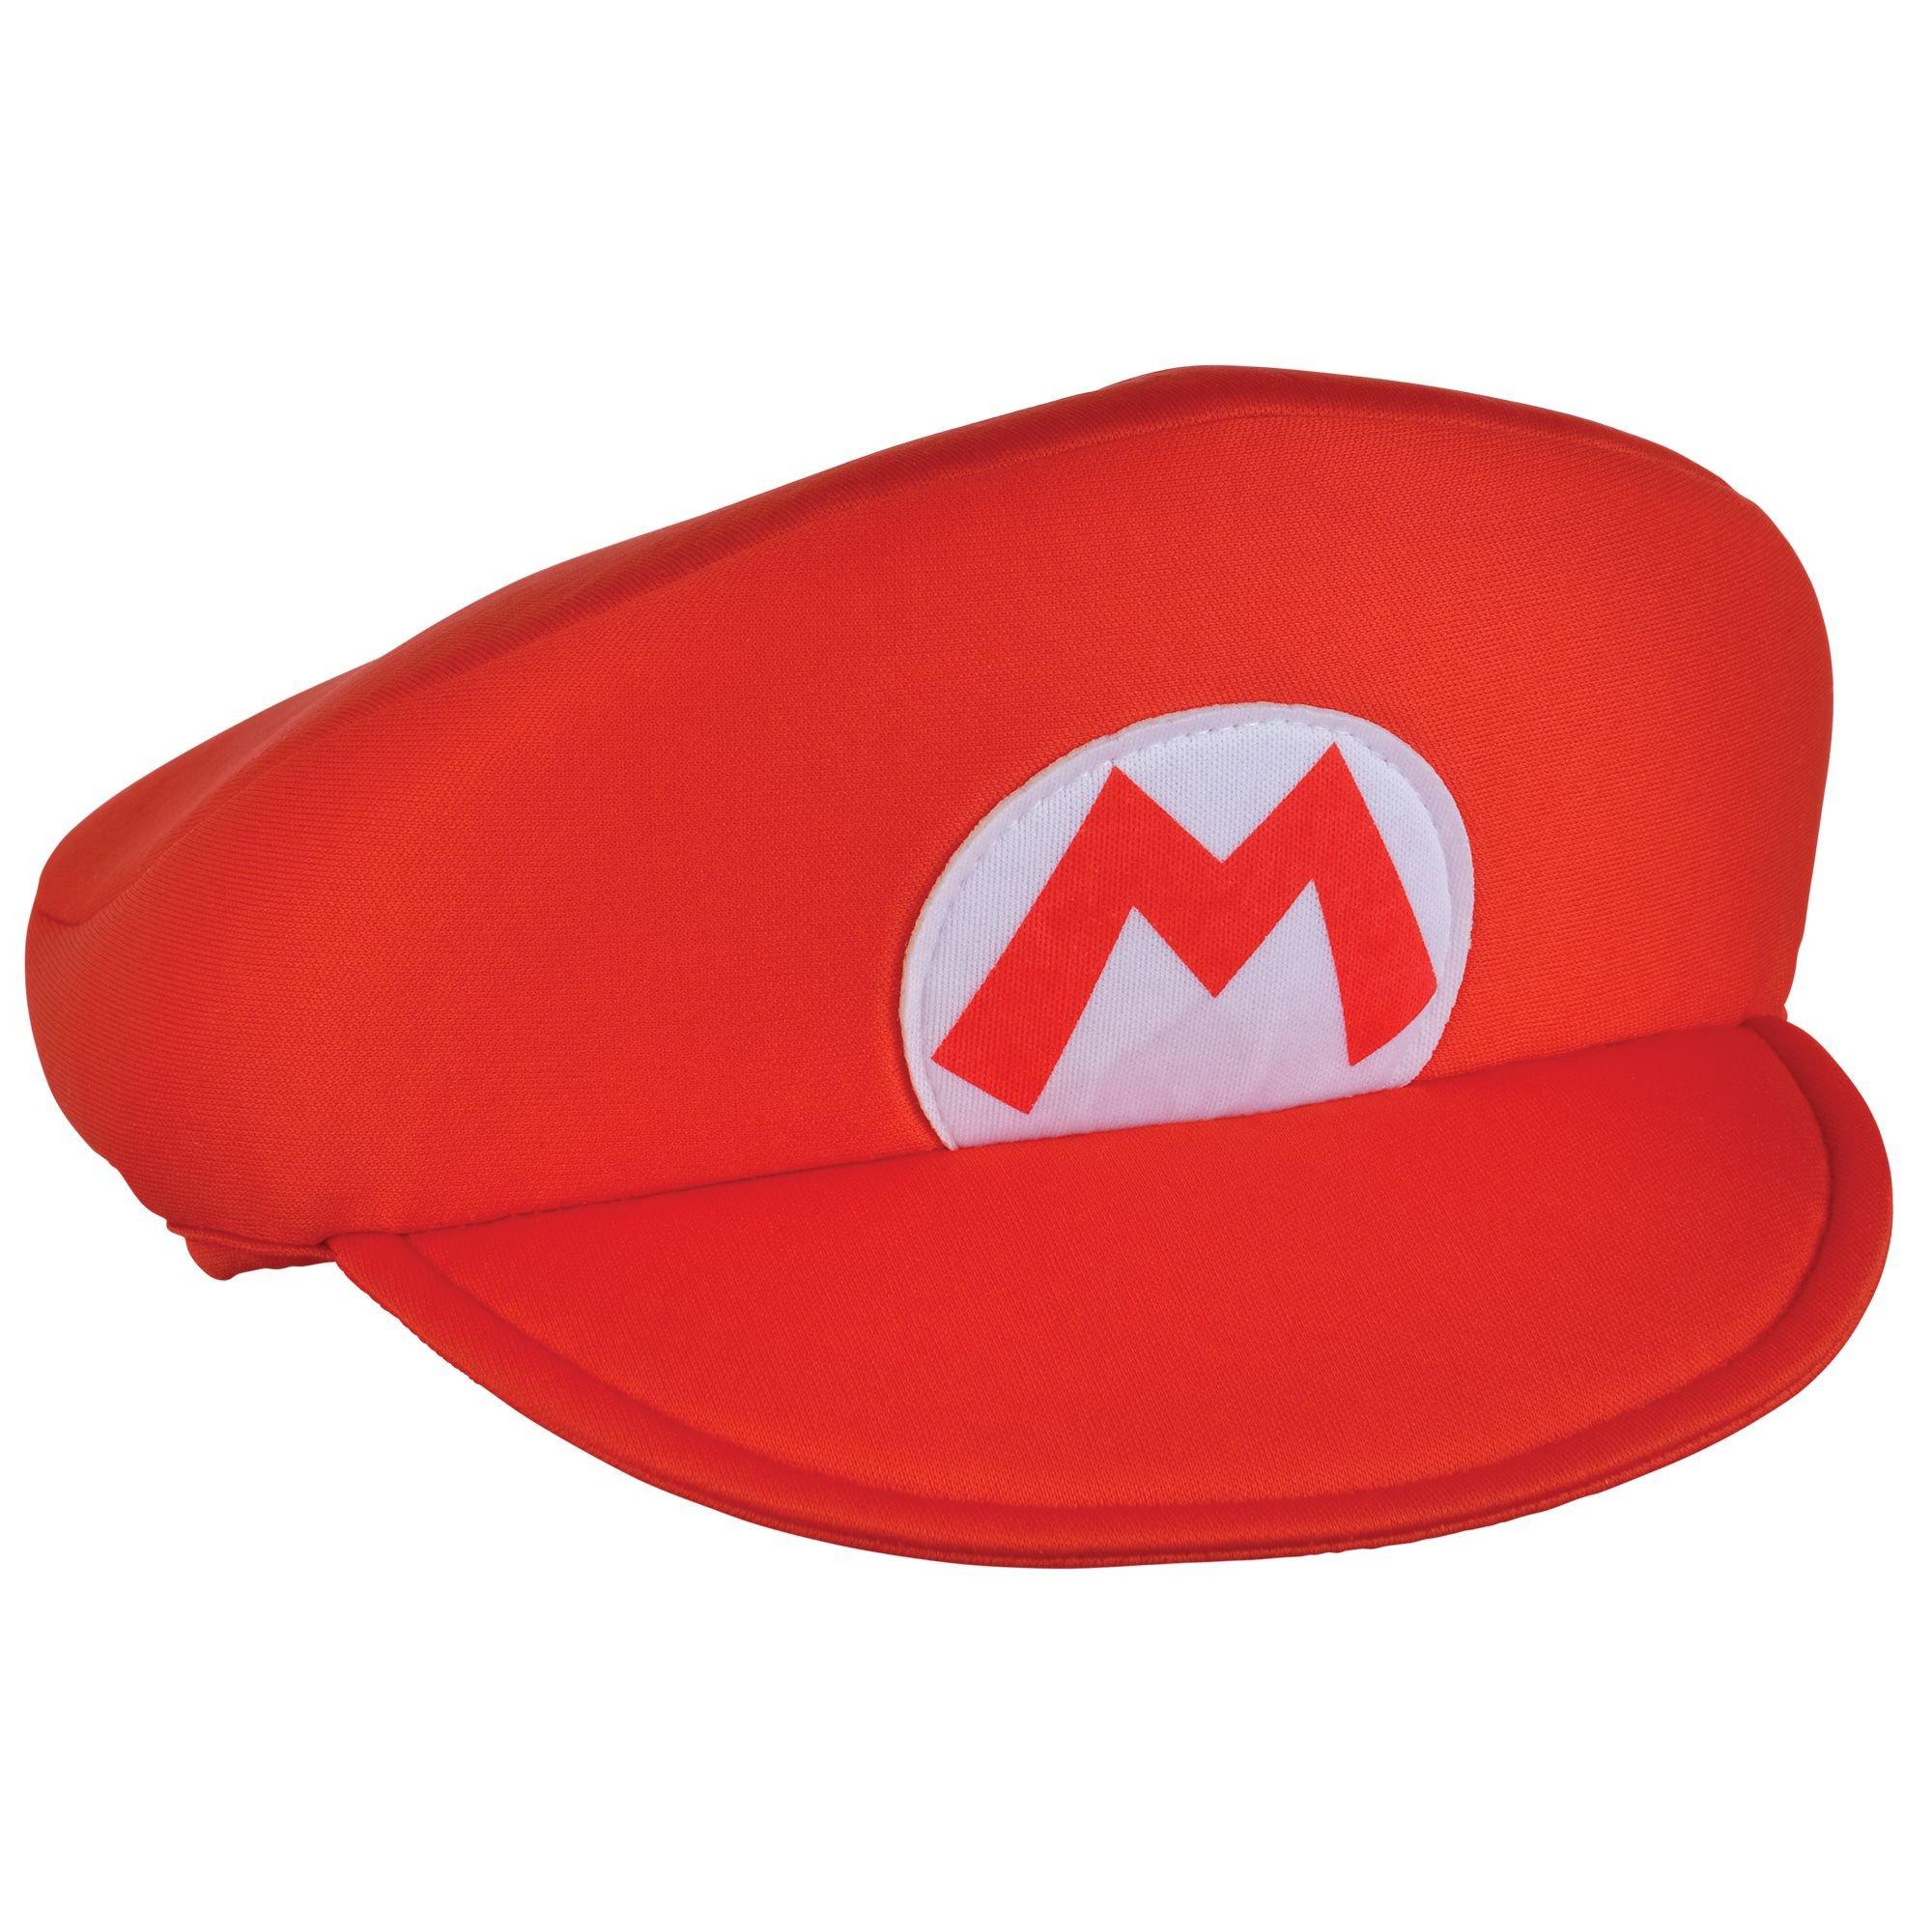 Foam Backed Mario Hat Super Mario Party City